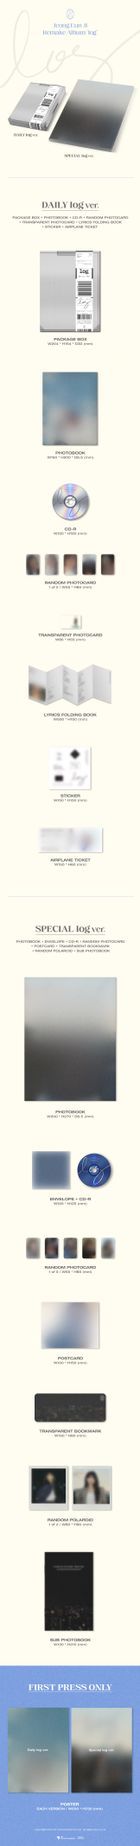 Apink : Jeong Eun Ji Remake Album - log (Special log Version) + Poster in Tube (Special log Version)